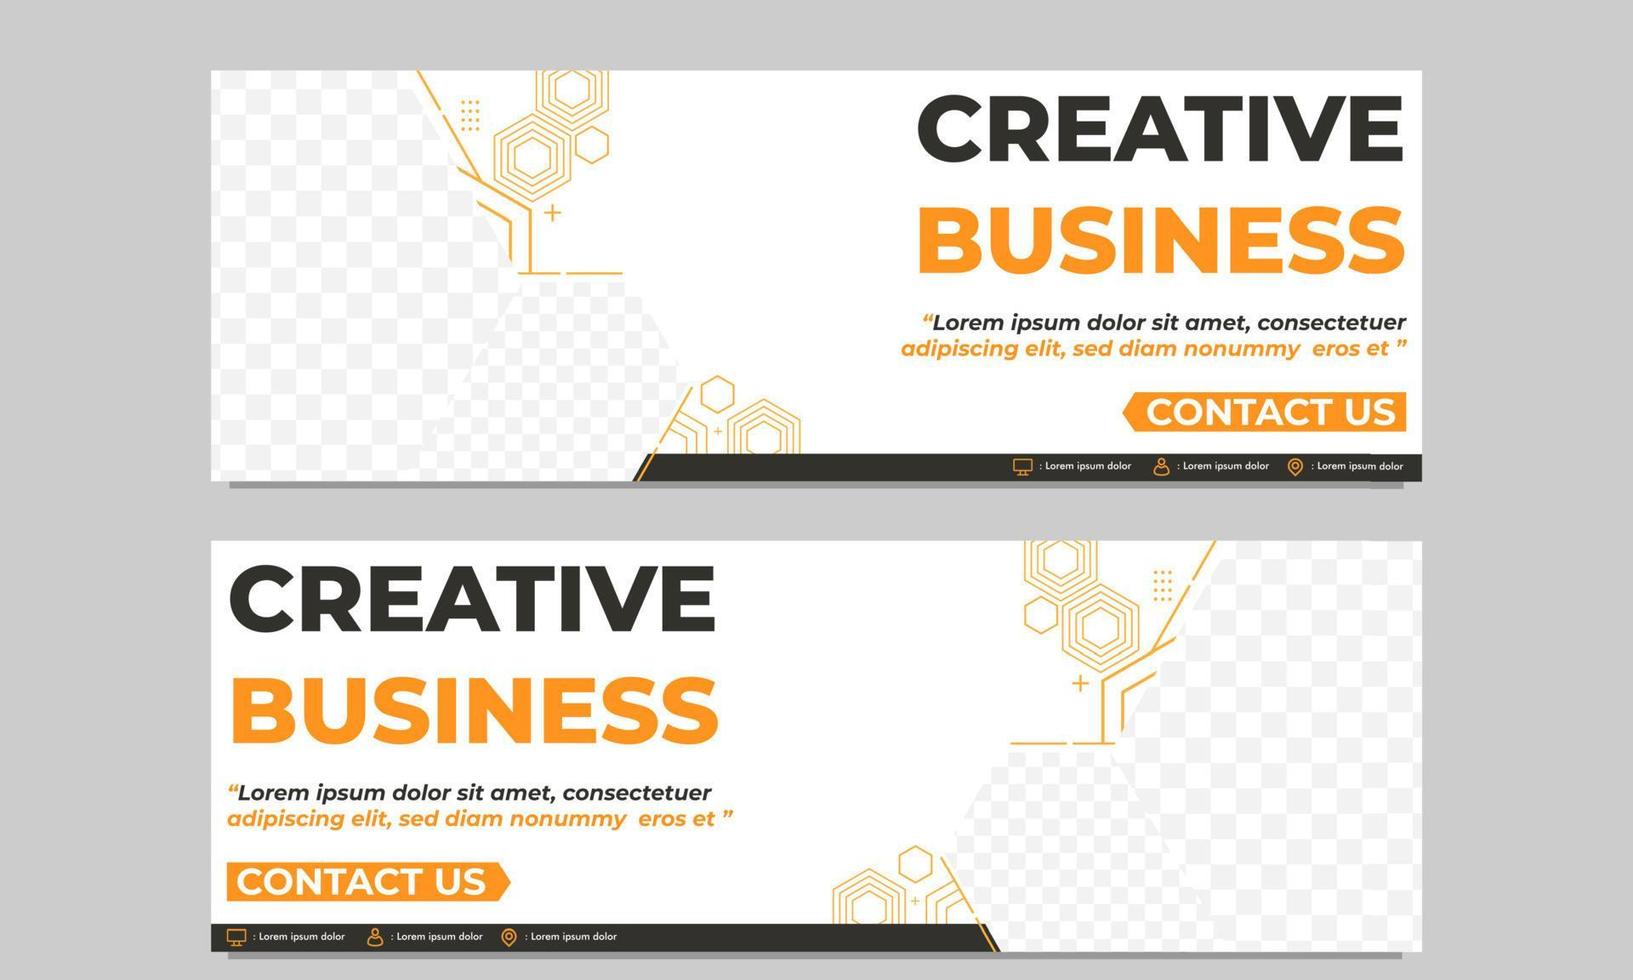 plantilla de banner horizontal de negocios creativos vector